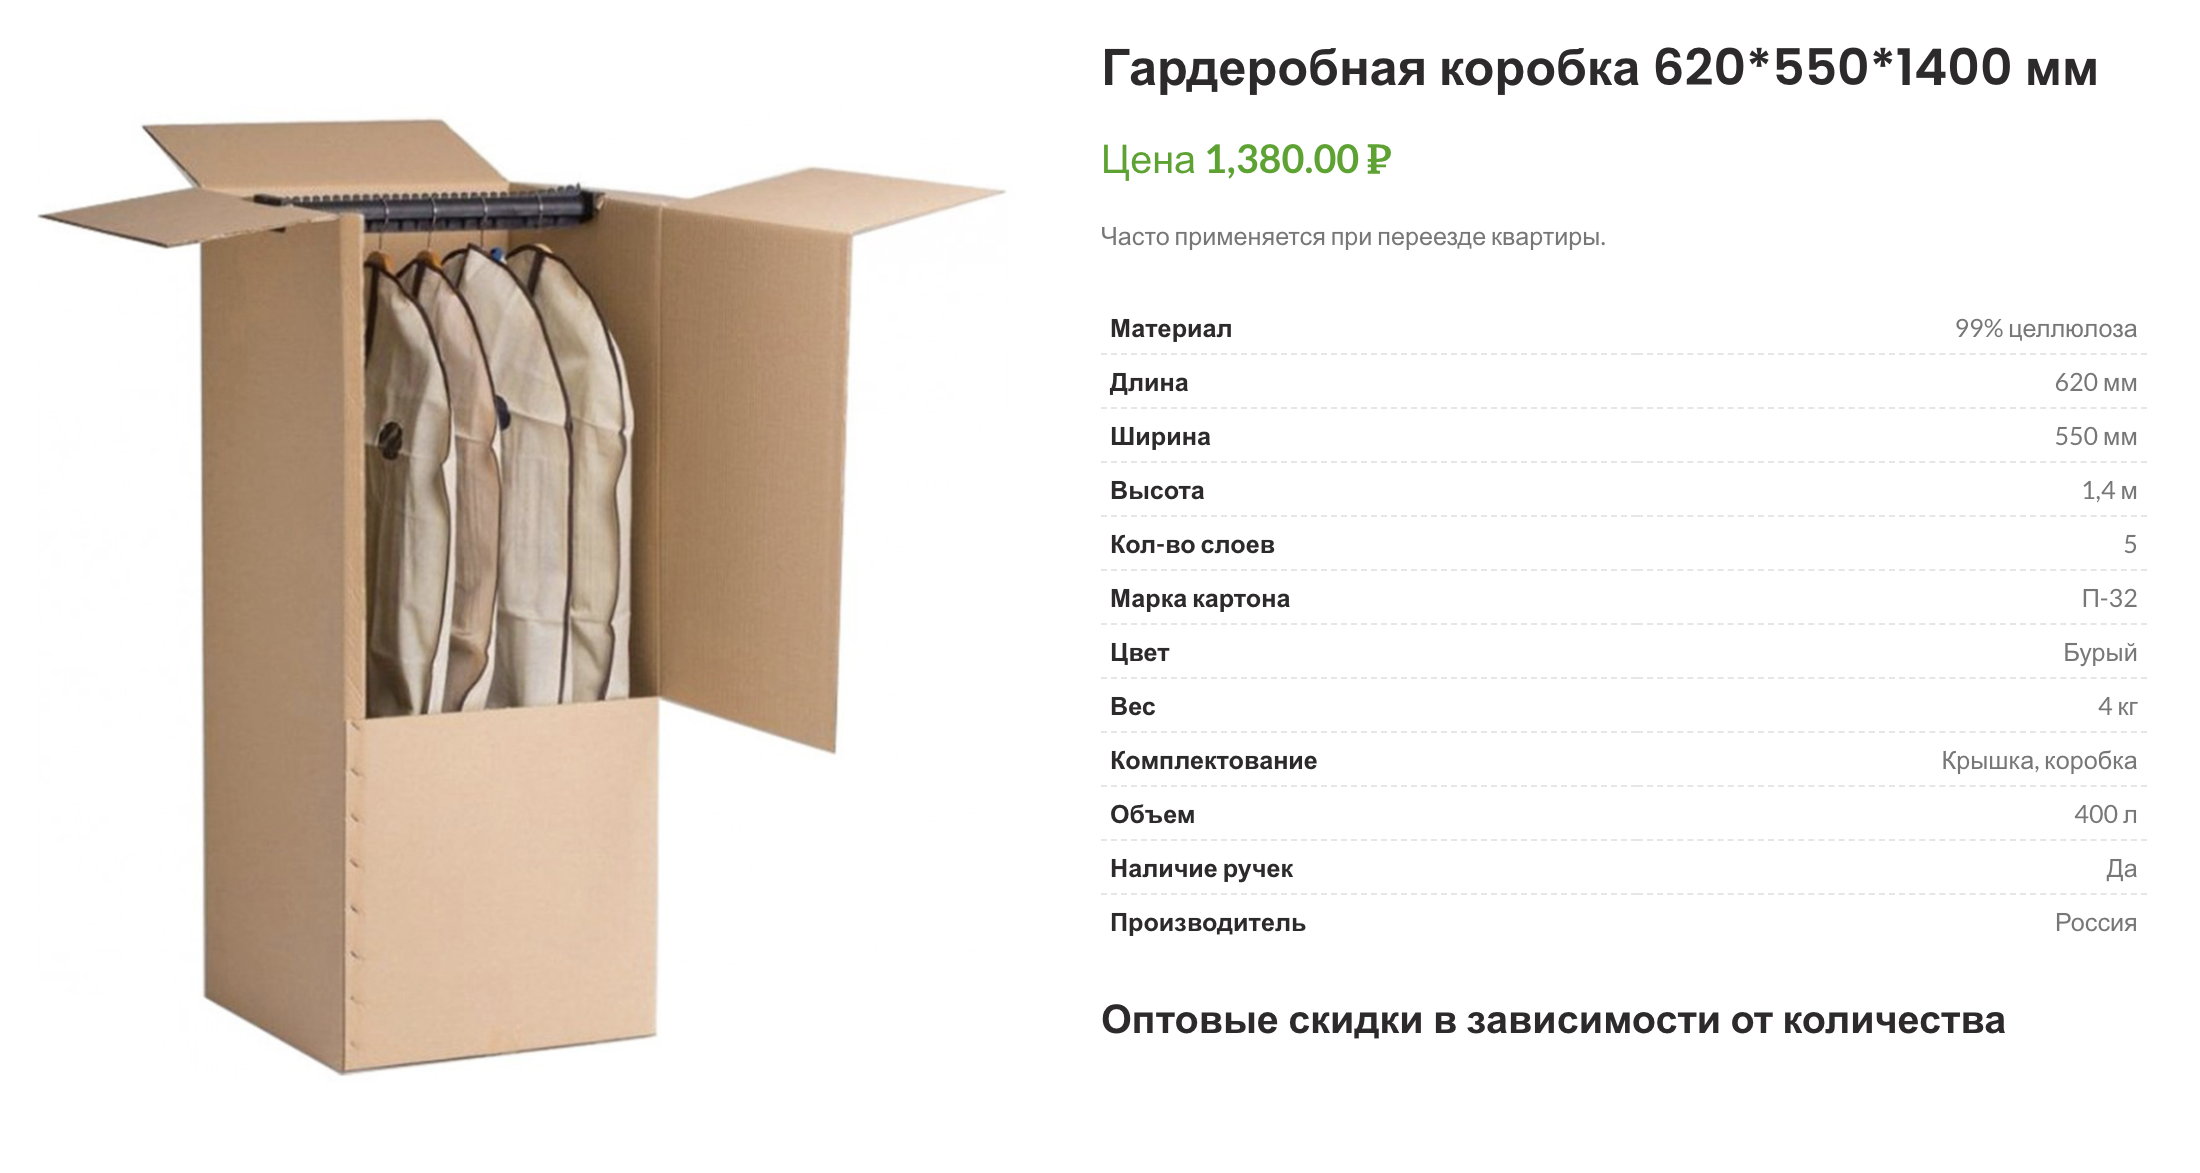 Упаковка для переезда в Екатеринбурге